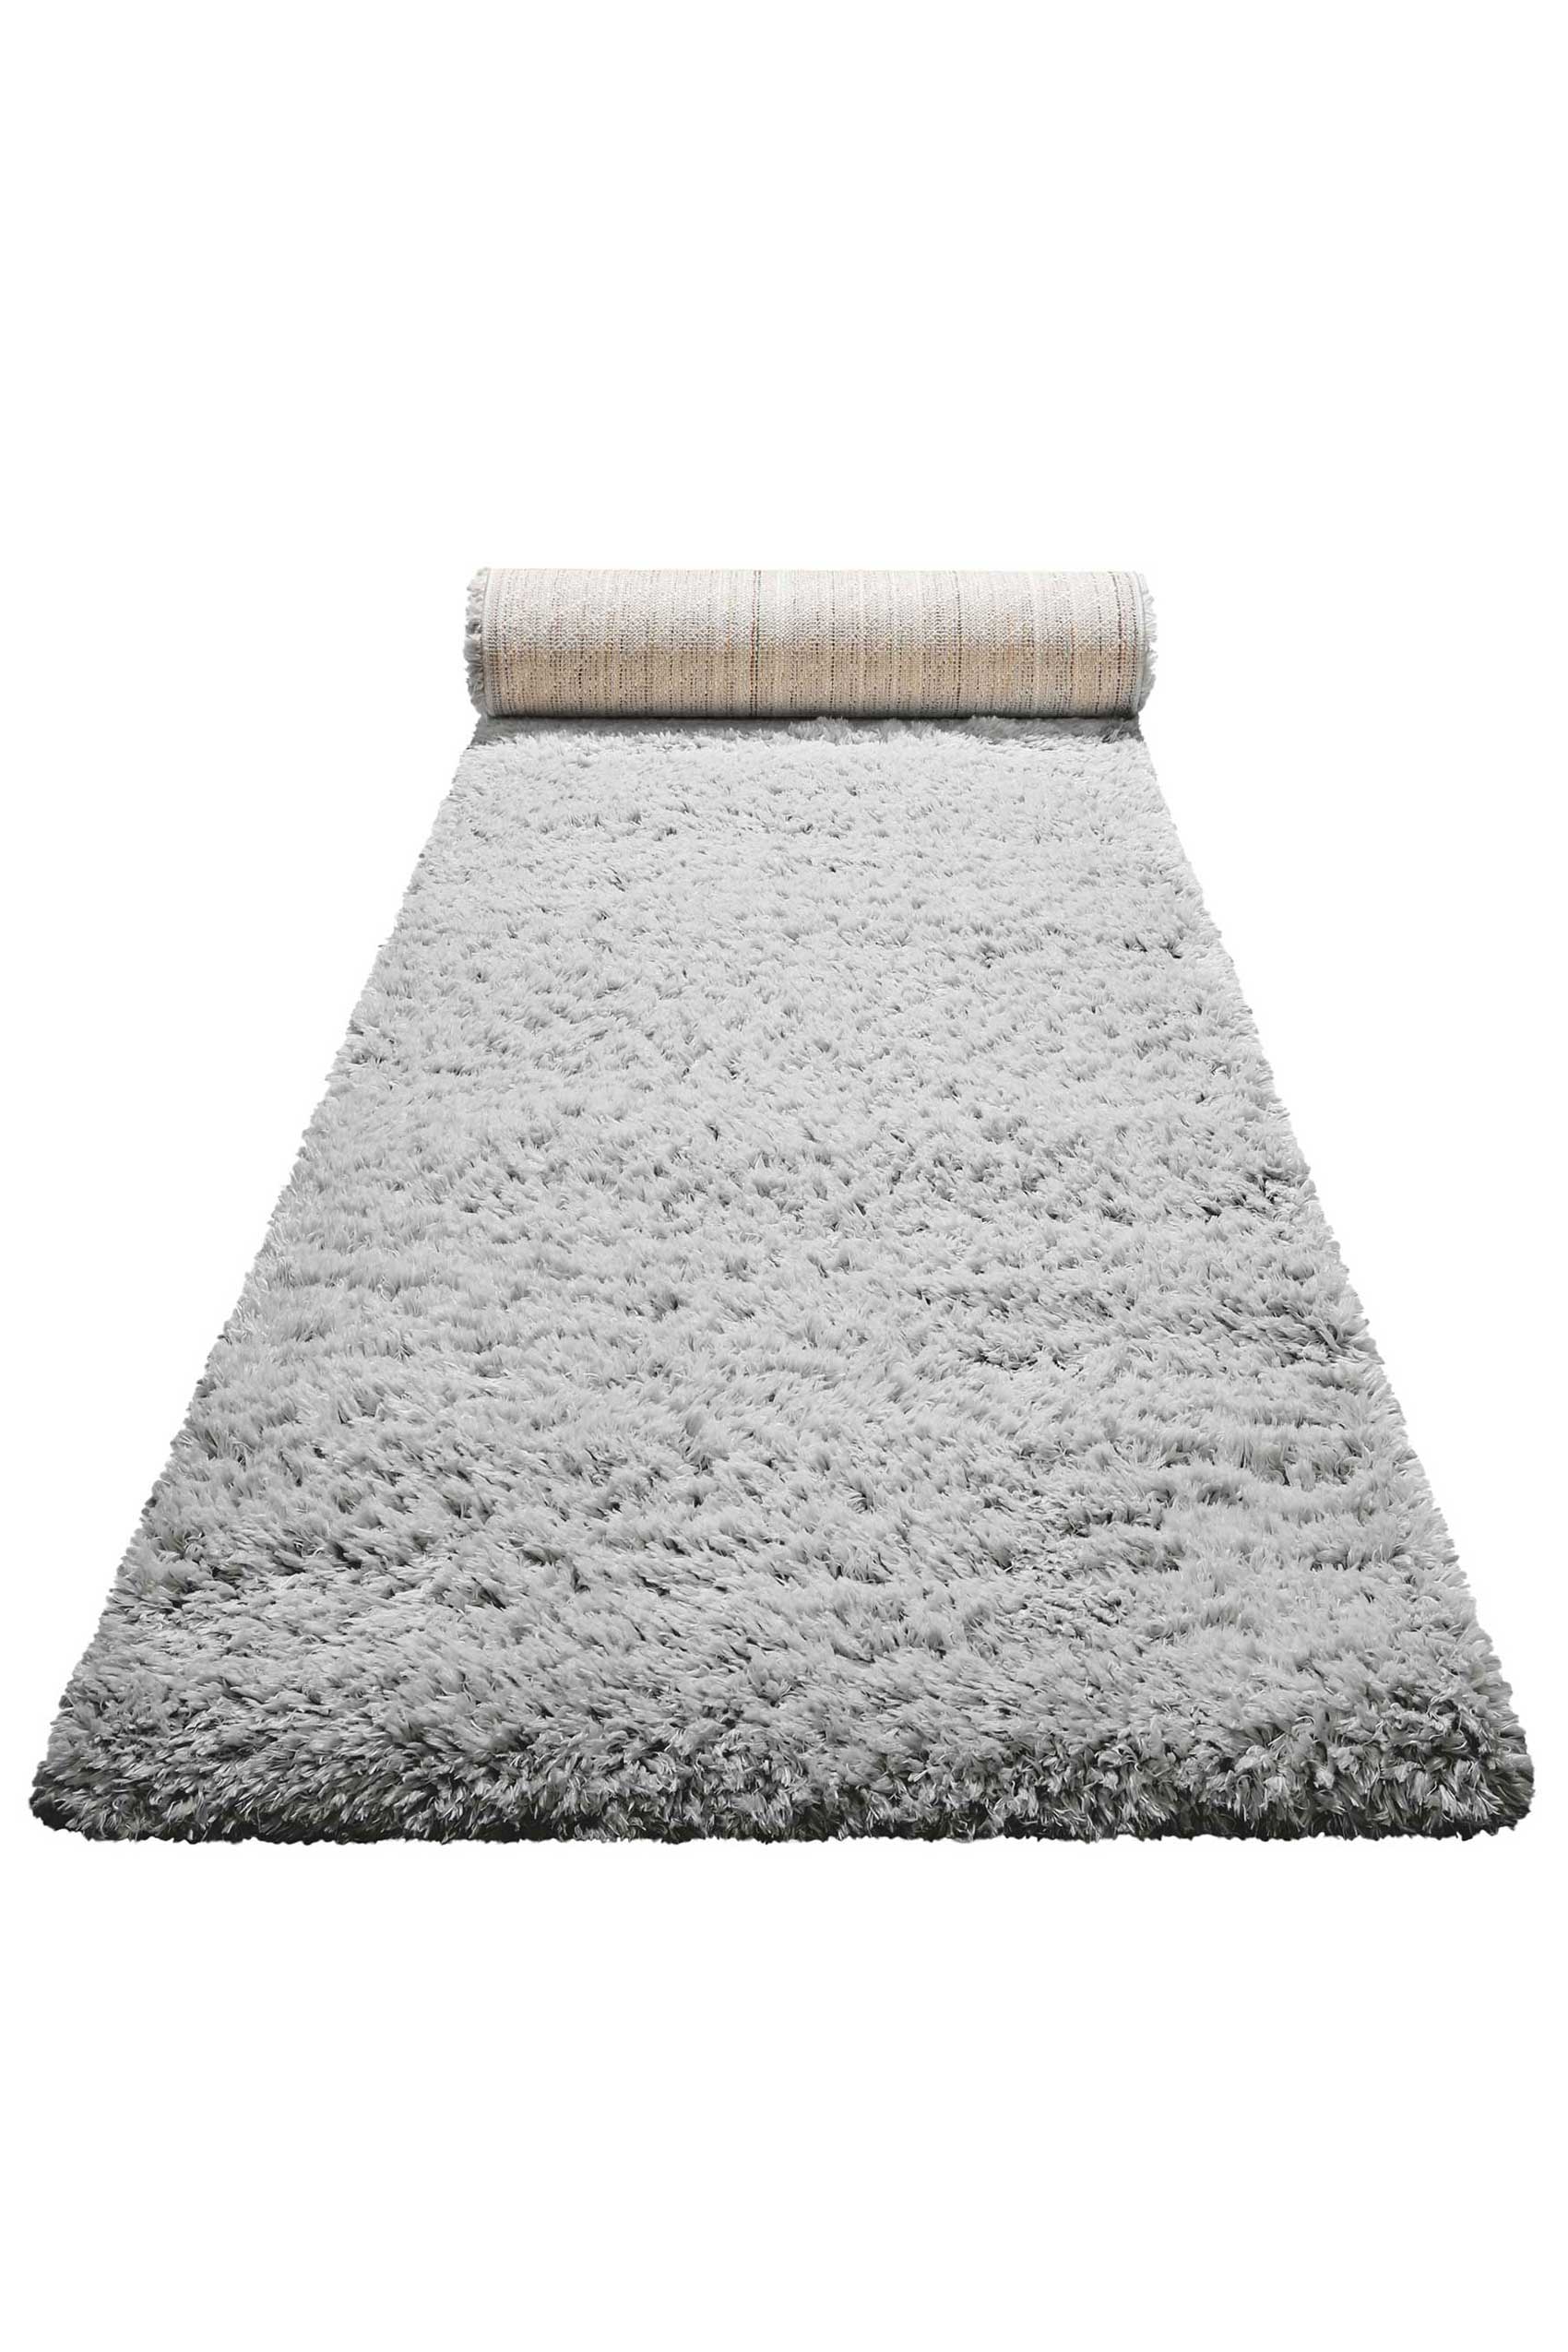 Nachhaltiger Teppich Grau Silber soft & weich » Matteo « Homie Living - Ansicht 5